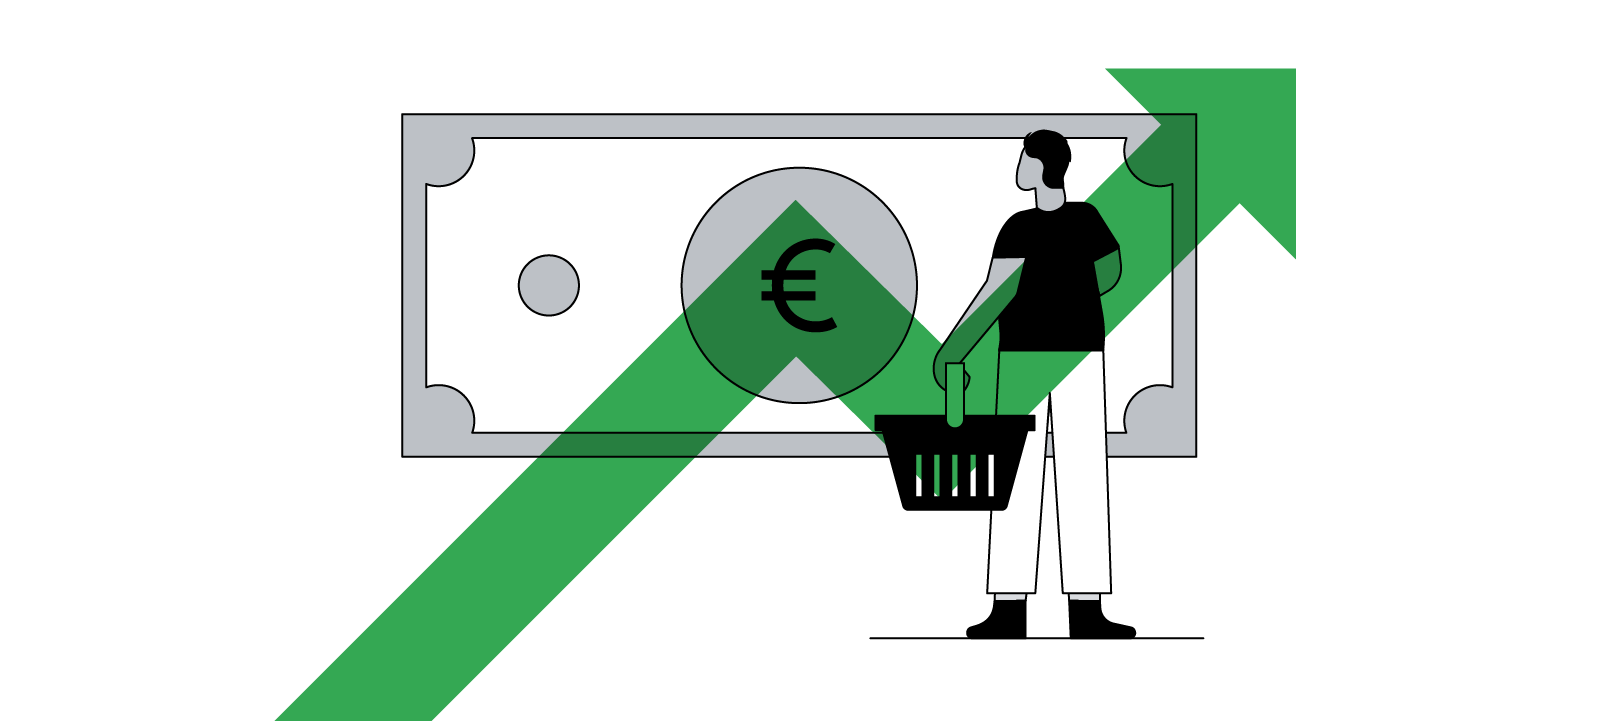 Ilustración de una persona sosteniendo una cesta de la compra y mirando un gran billete. Una flecha verde está colocada encima de la ilustración, indicando que la persona está pensando en la subida de los precios.